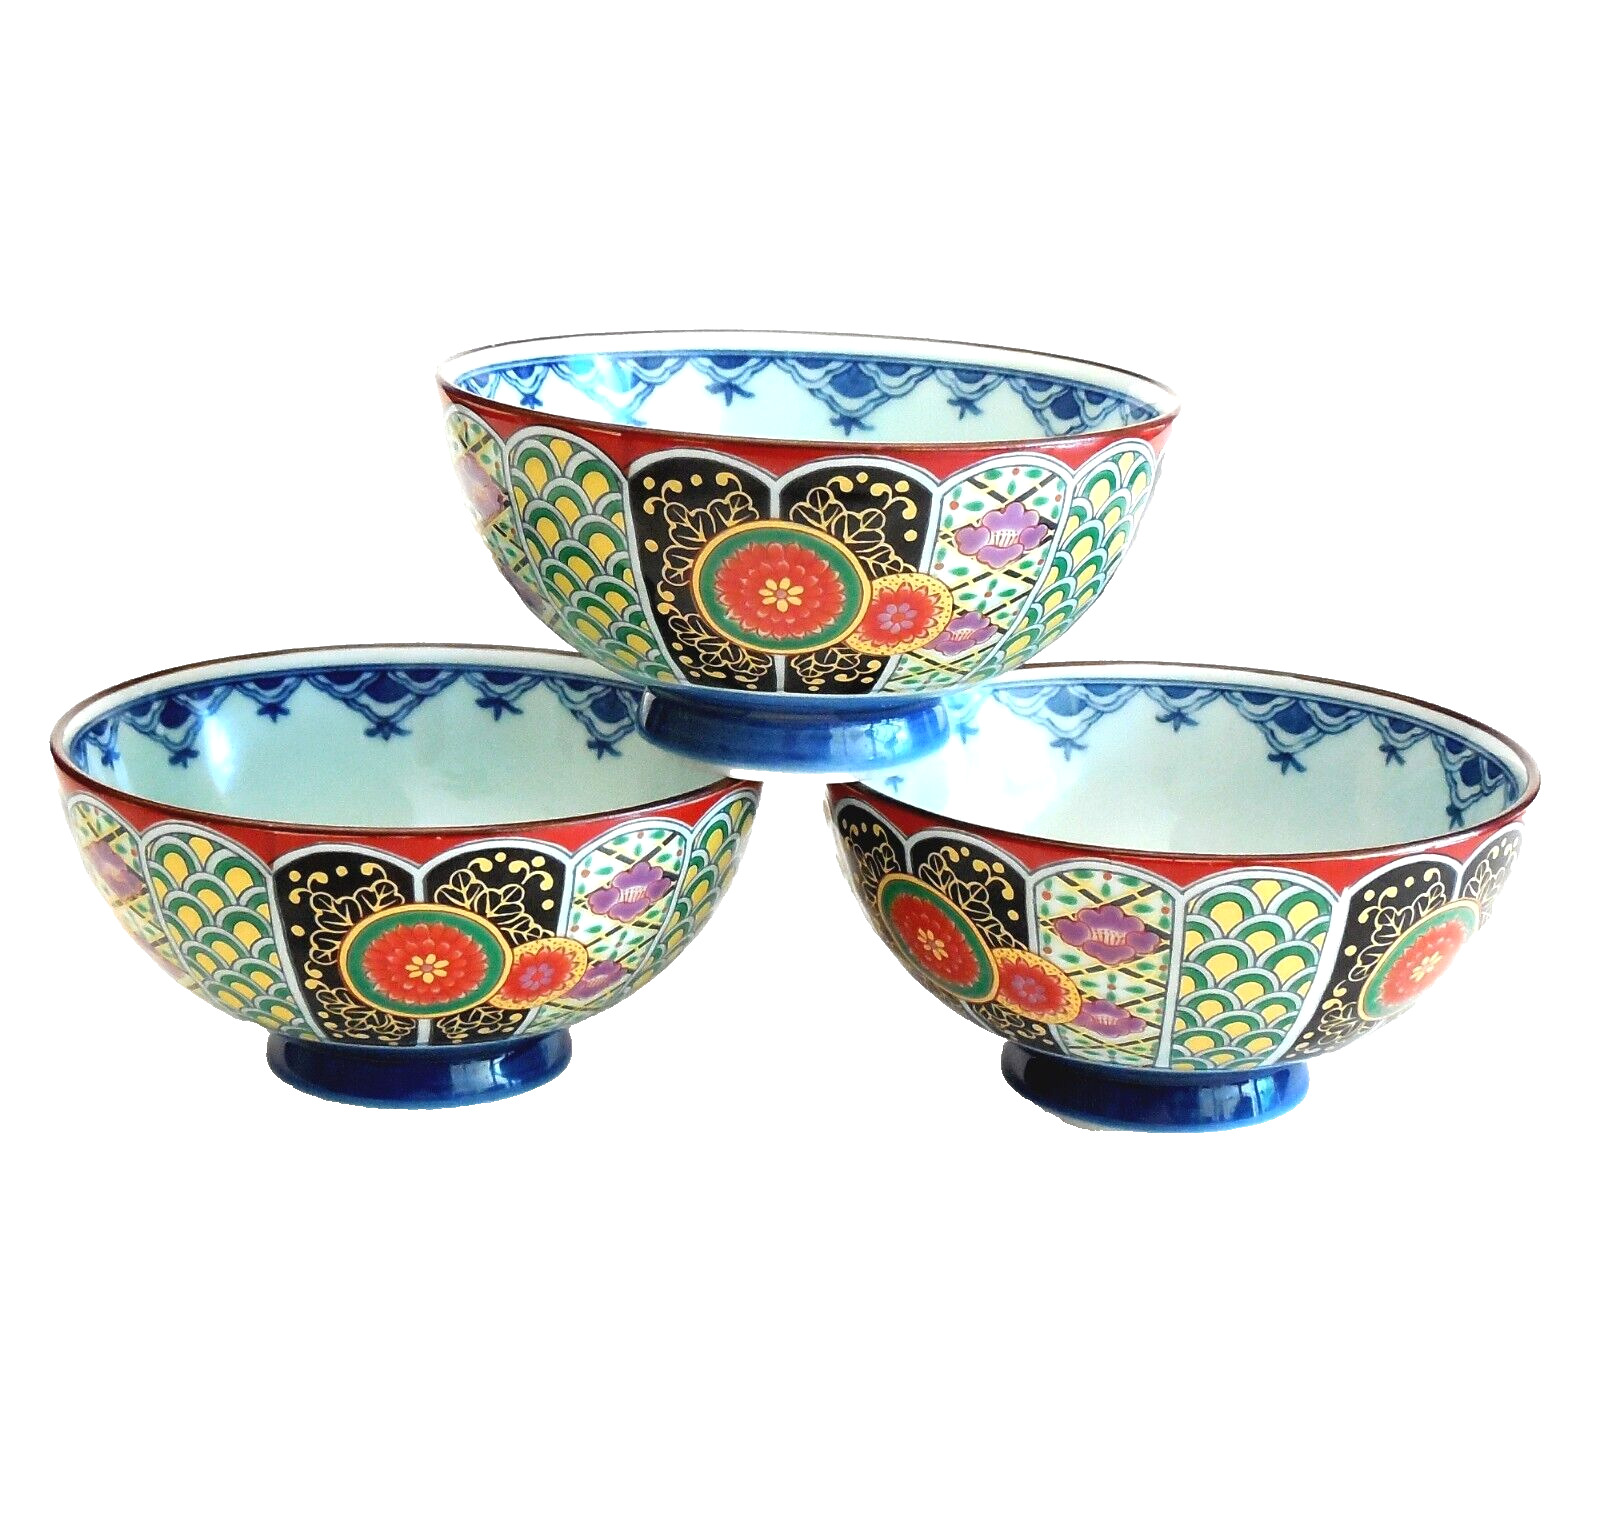 Amari Arita Ware Rice Soup Bowls 3 pc Colorful Japanese Porcelain Excel. Cond.